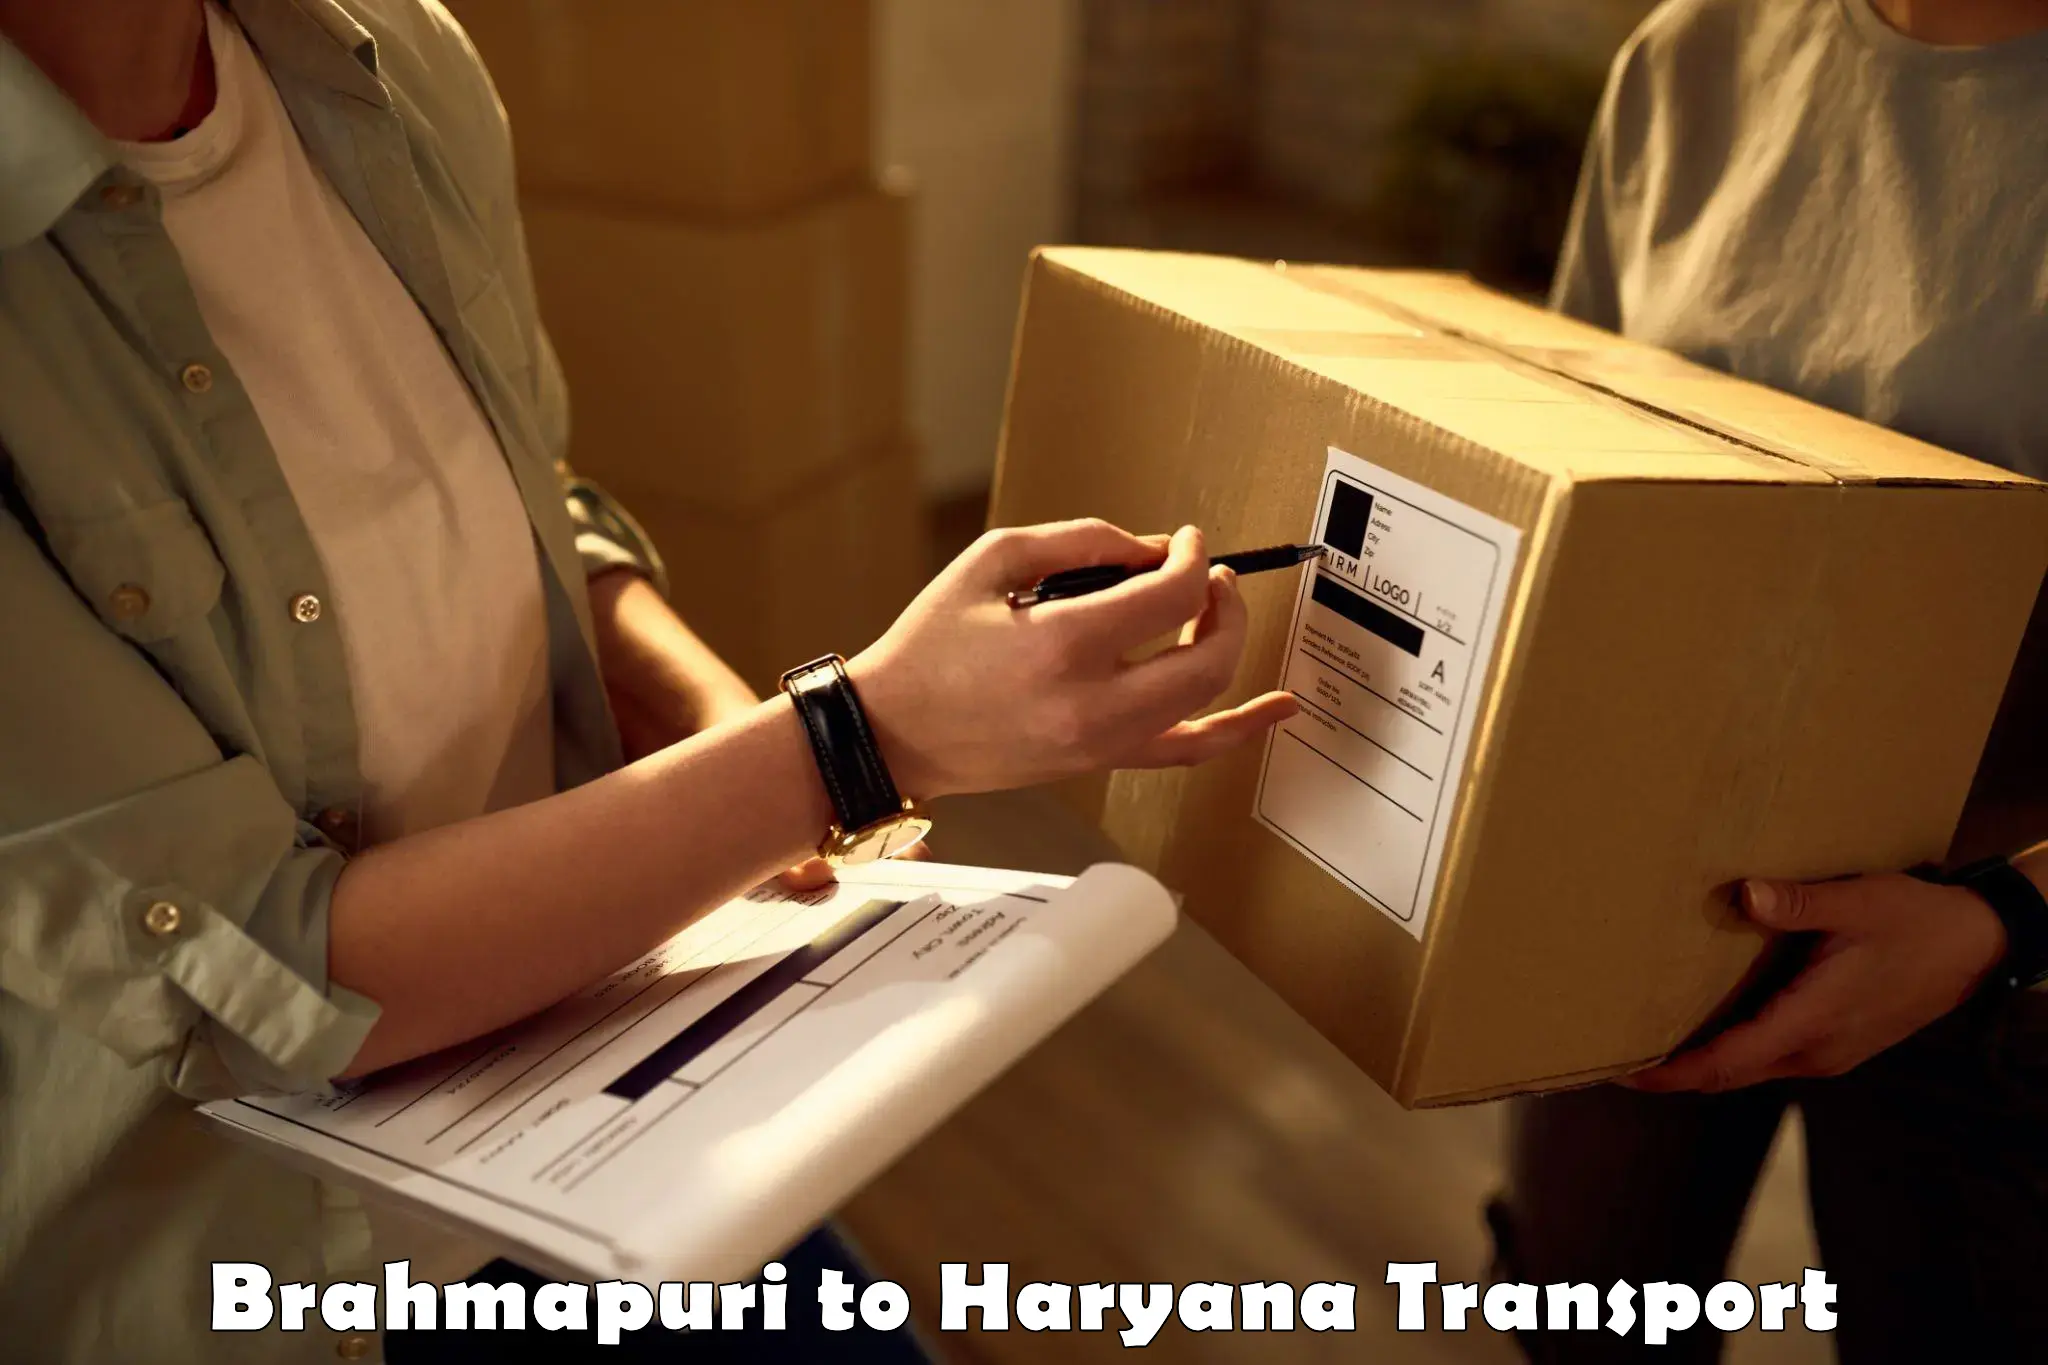 Lorry transport service Brahmapuri to NCR Haryana